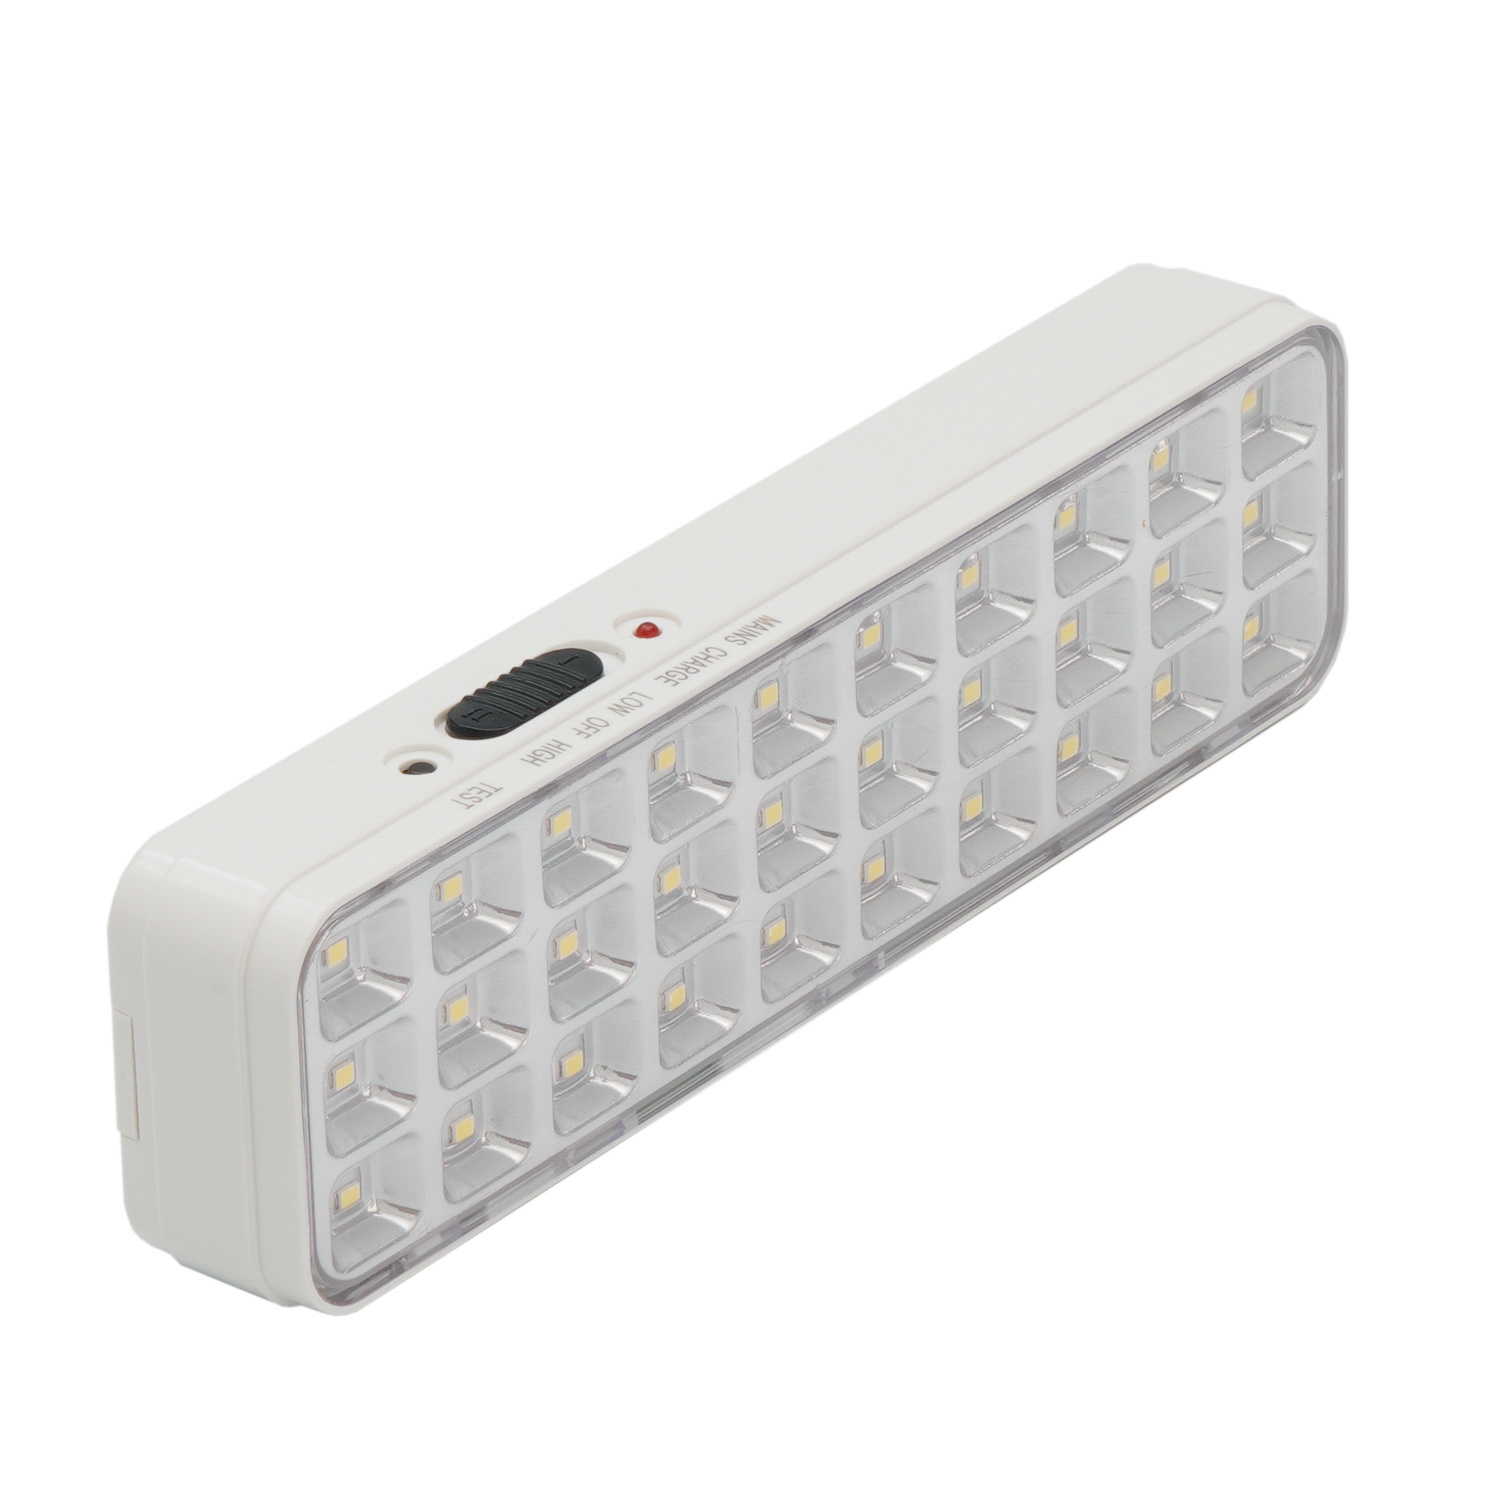 luz que acampa de la luz de emergencia del LED recargable de 30pcs LED, brillo máximo y de la mezcla 